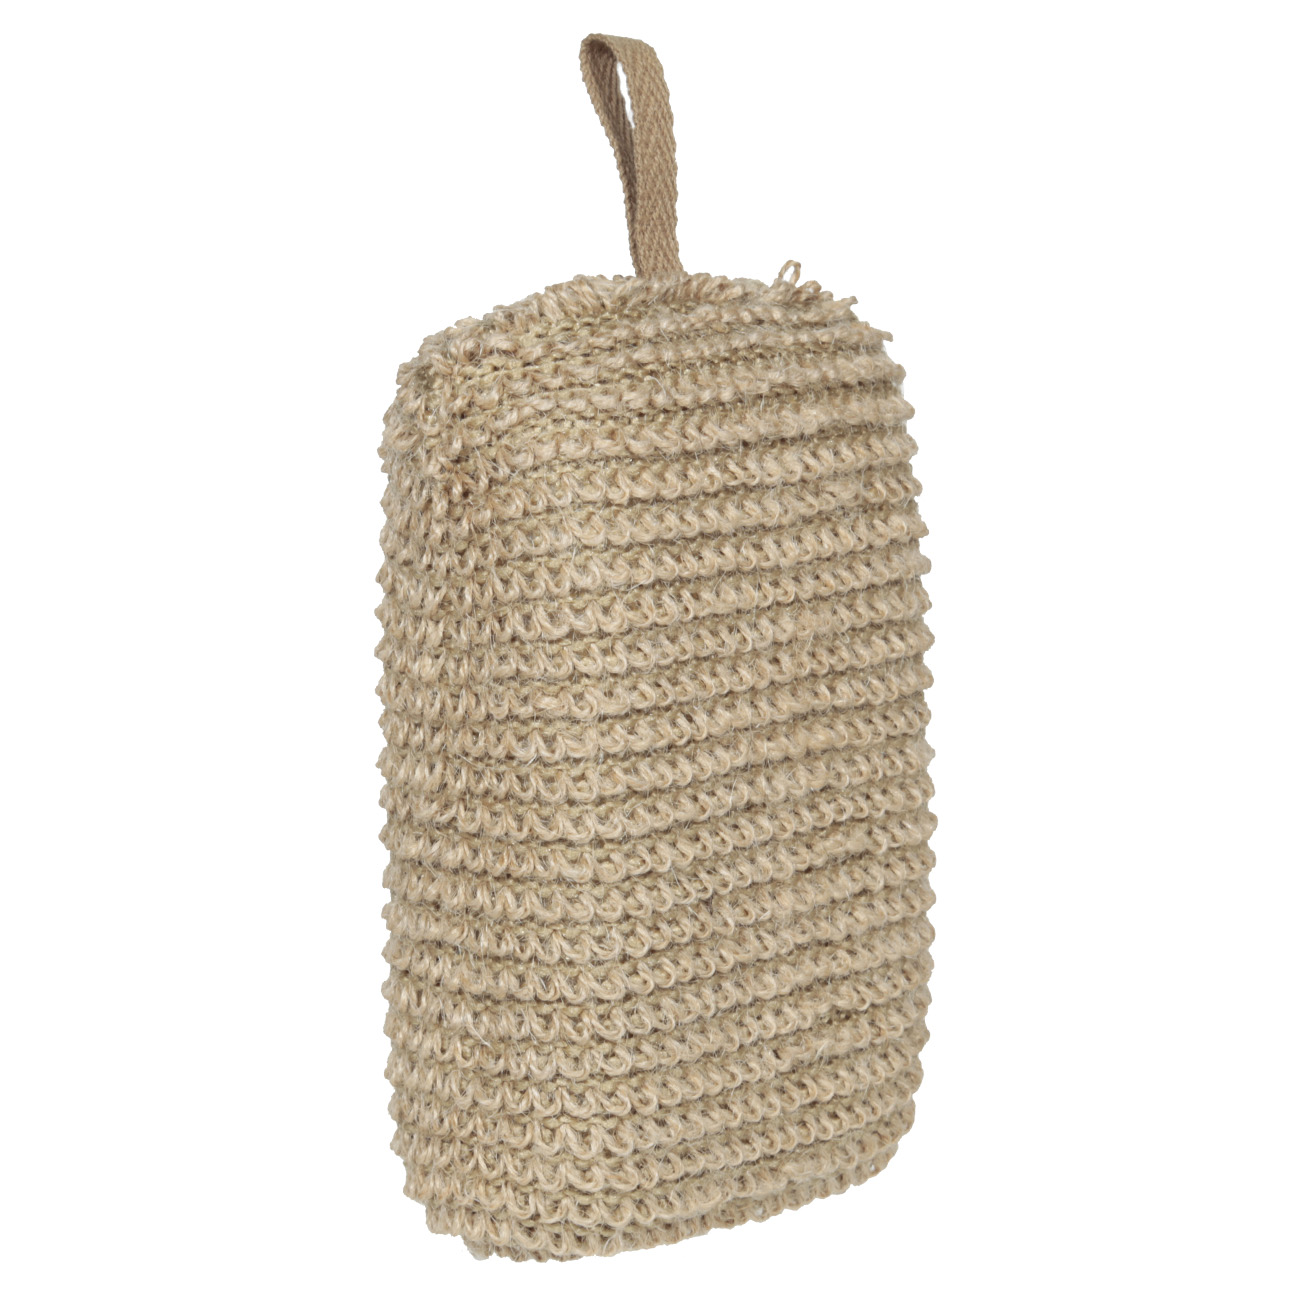 Мочалка-губка для мытья тела, 9х14 см, конопляное волокно/полиуретан, бежевая, Eco life изображение № 2